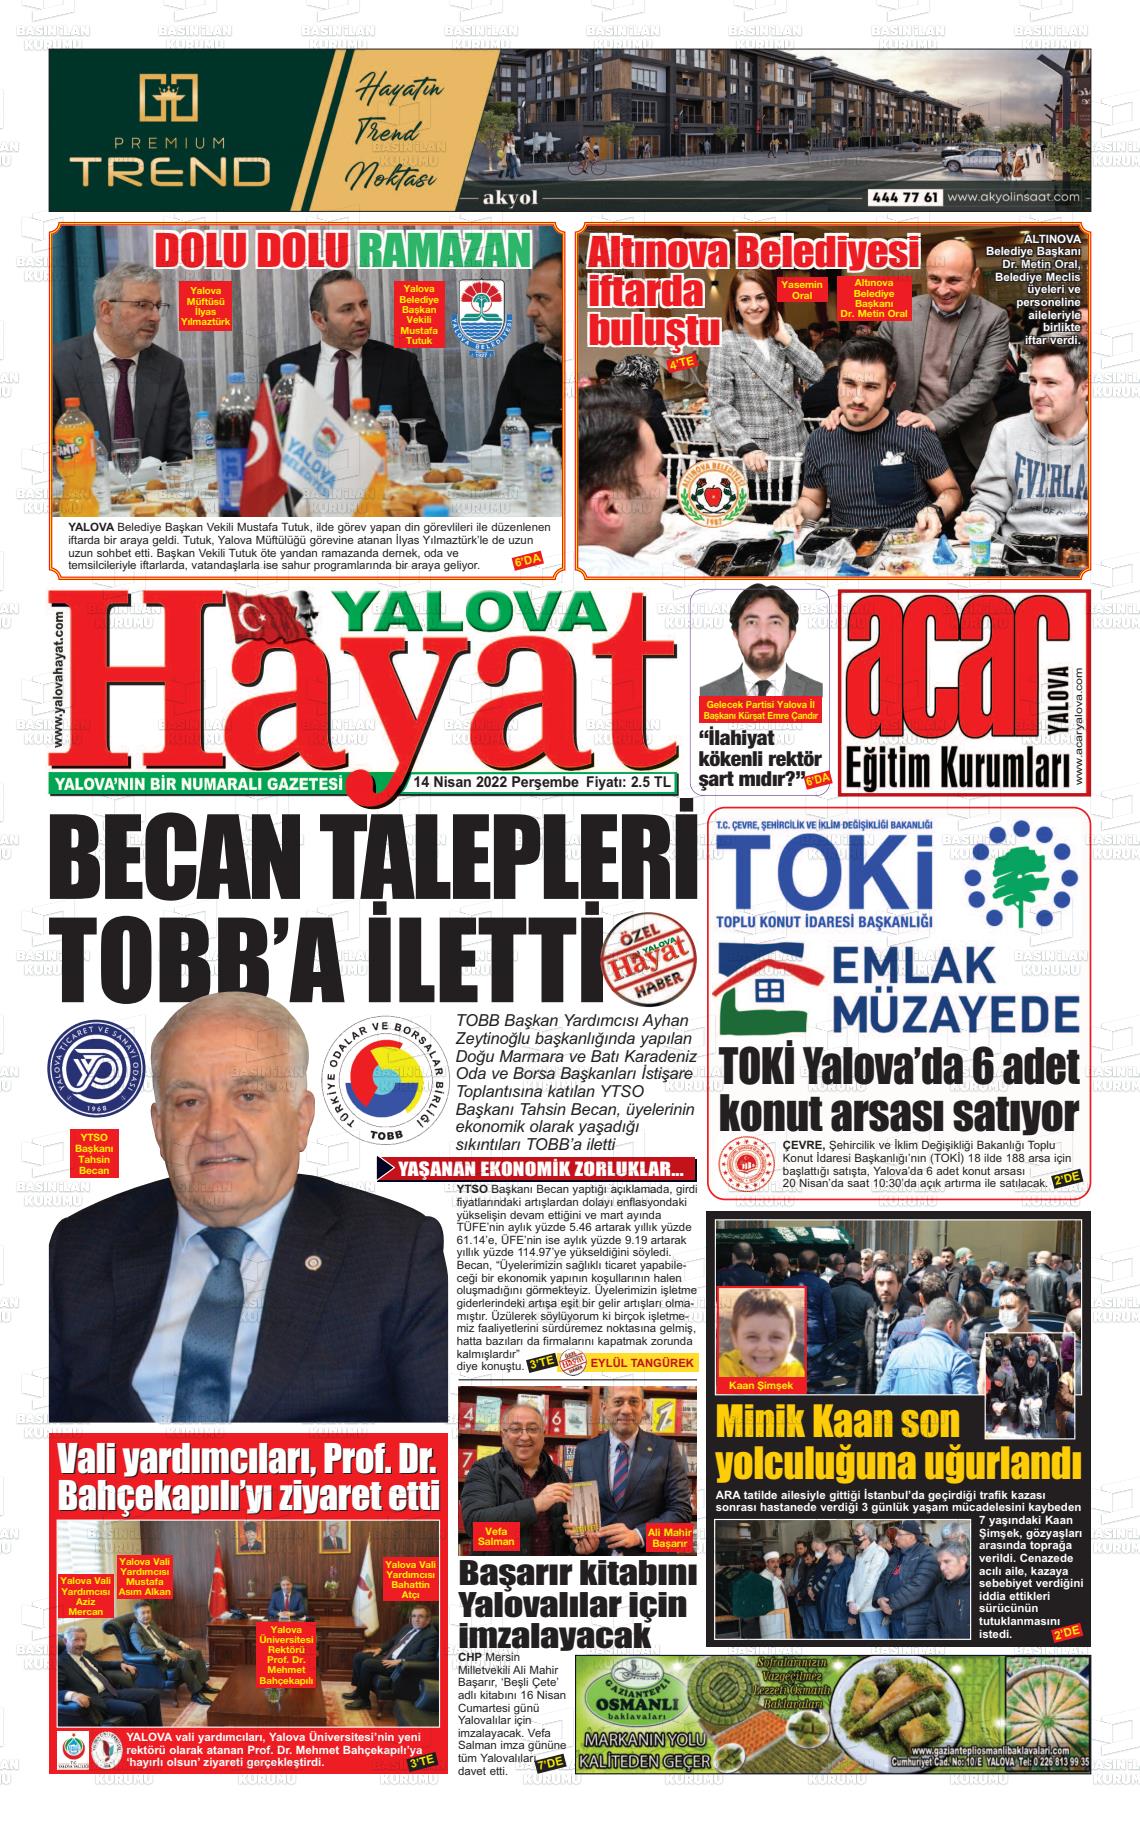 14 Nisan 2022 Yalova Hayat Gazete Manşeti